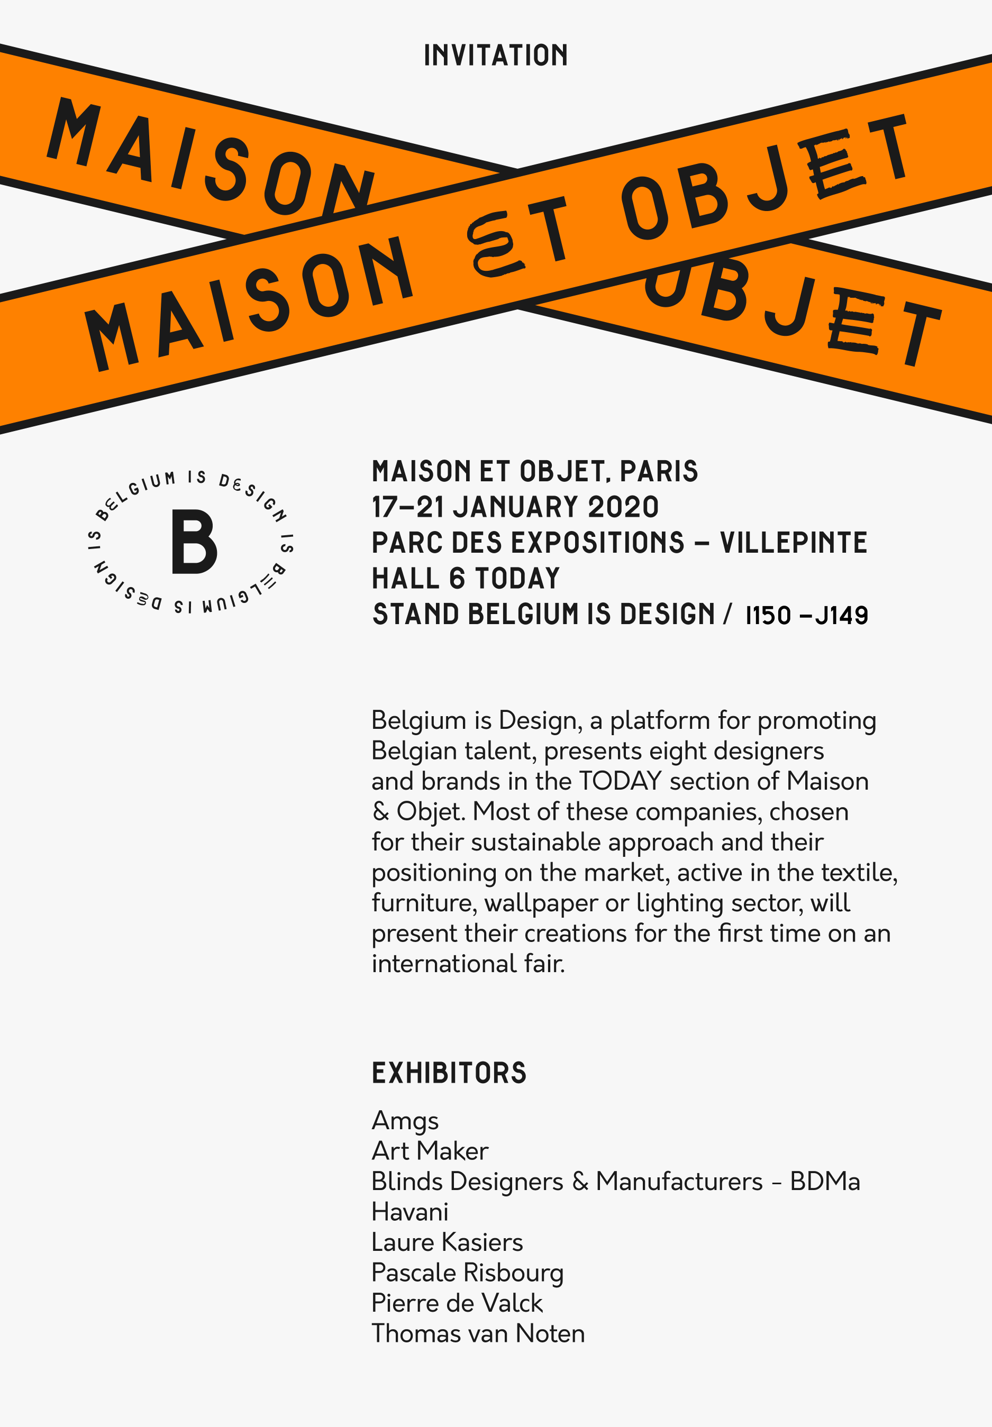 INVITATION: Belgium is Design - Maison&Objet Paris